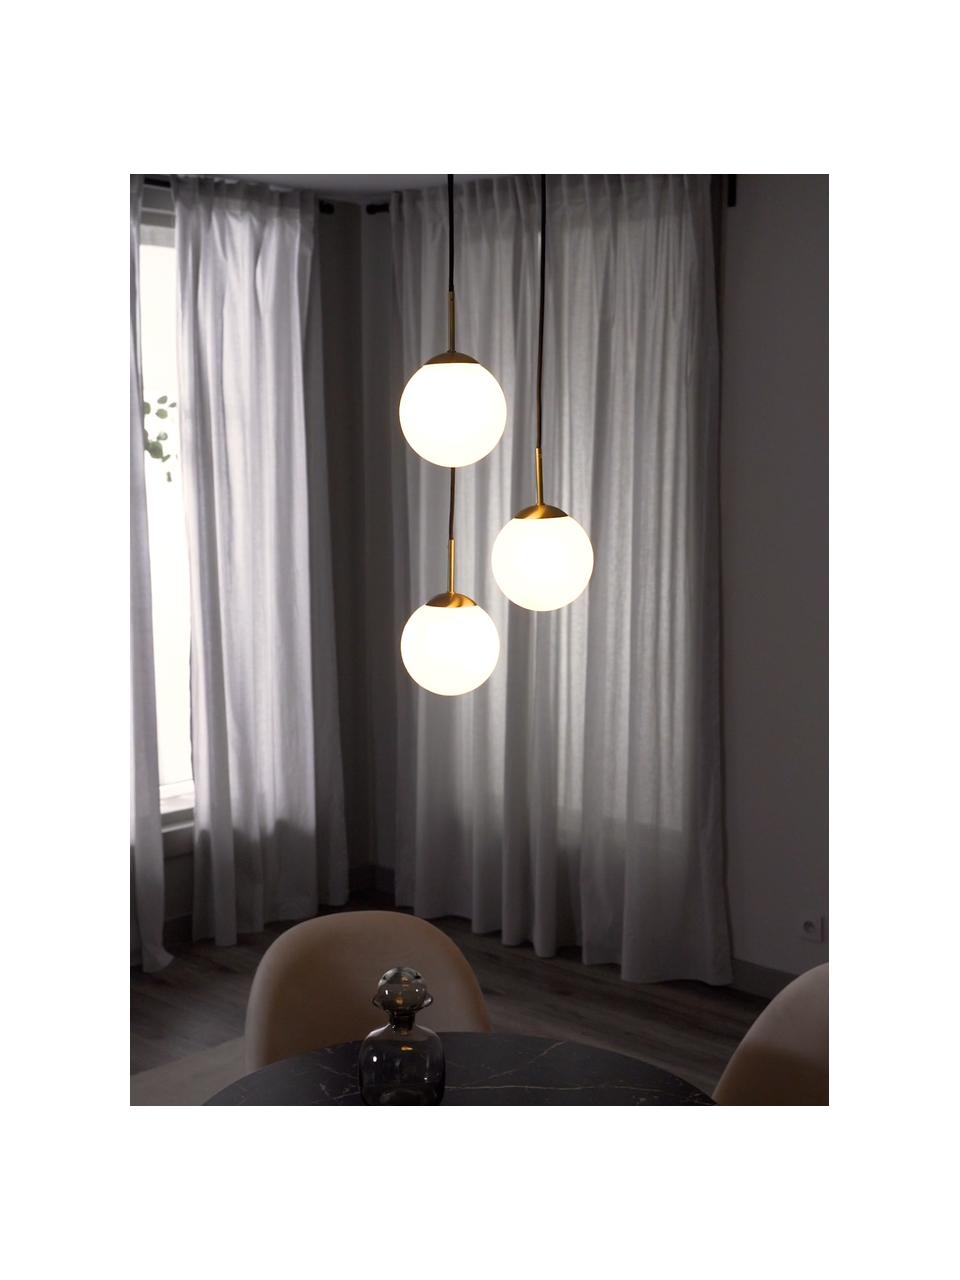 Lampa wisząca ze szkła opalowego Edie, Biały, mosiądz, S 30 x G 30 cm